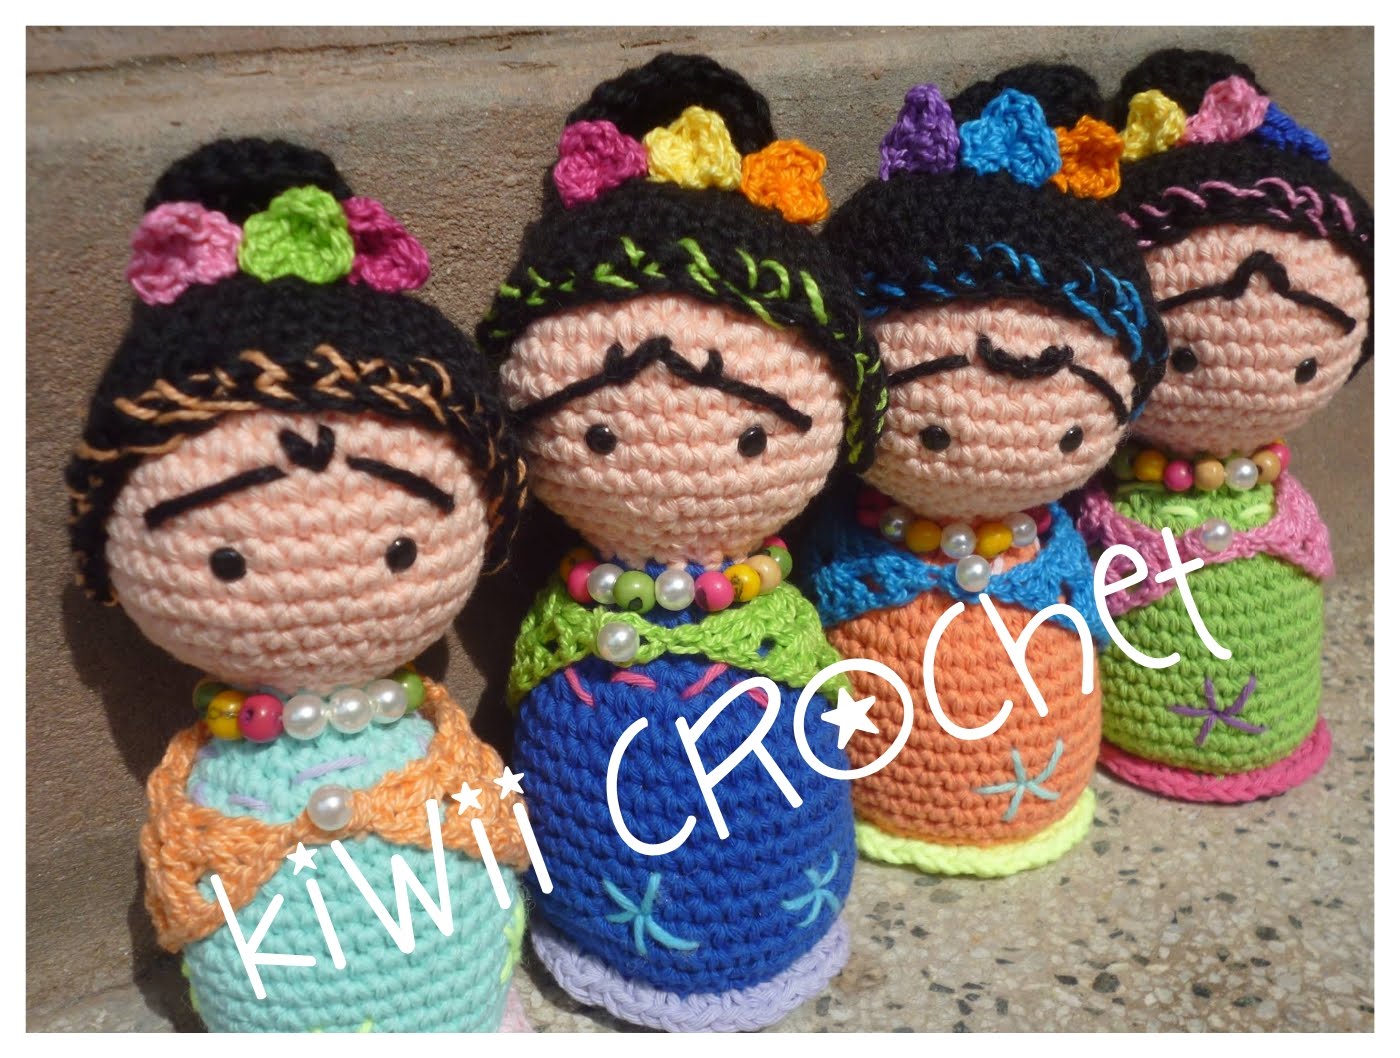 Kiwii Crochet